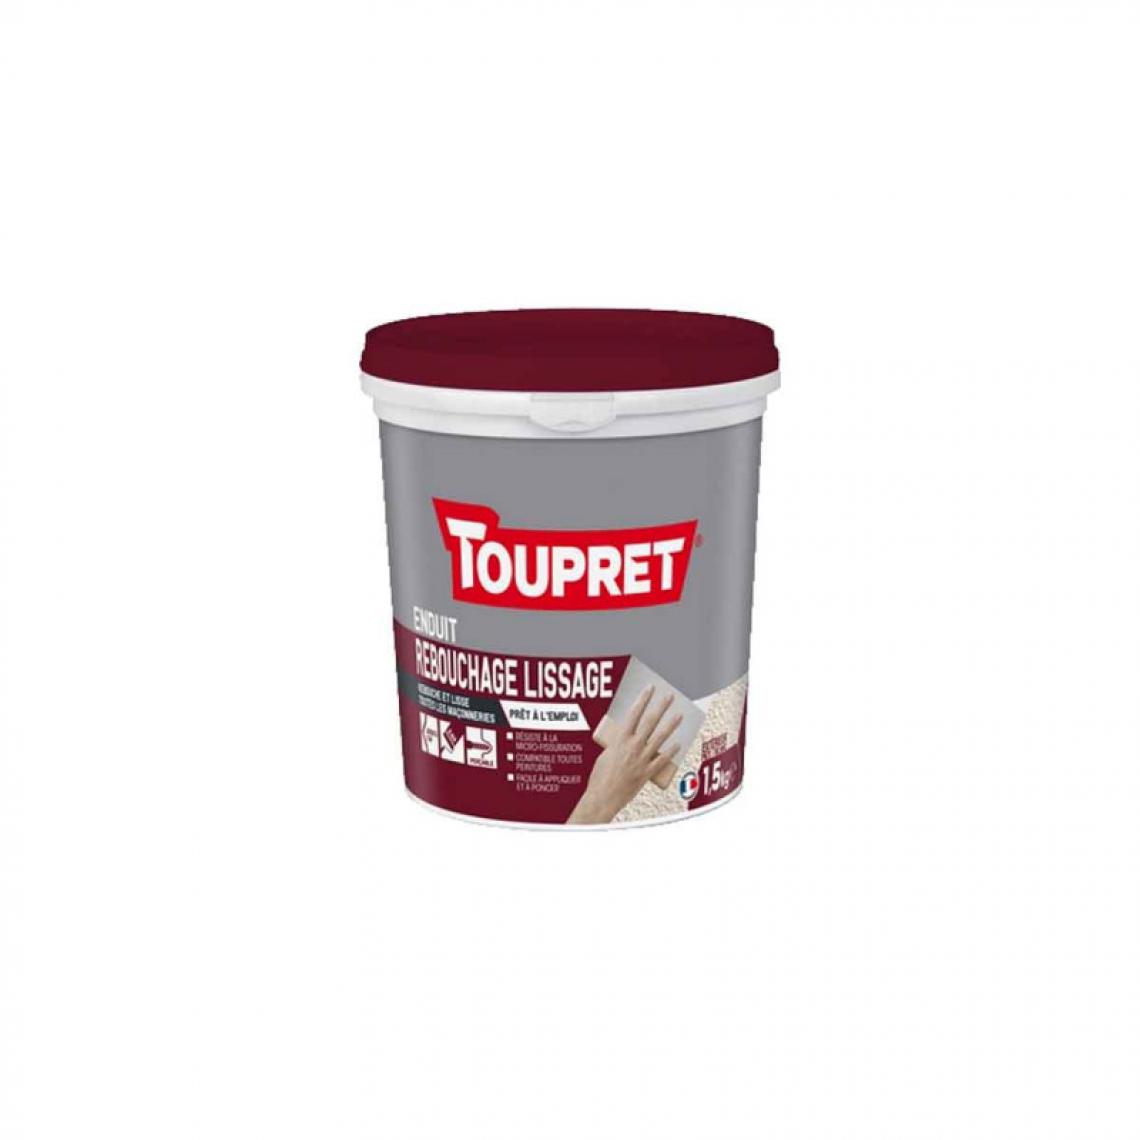 Toupret - Pate Rebouchage lissage 2 en 1 TOUPRET 1,5kg - BCMULPEX1.5 - Mastic, silicone, joint